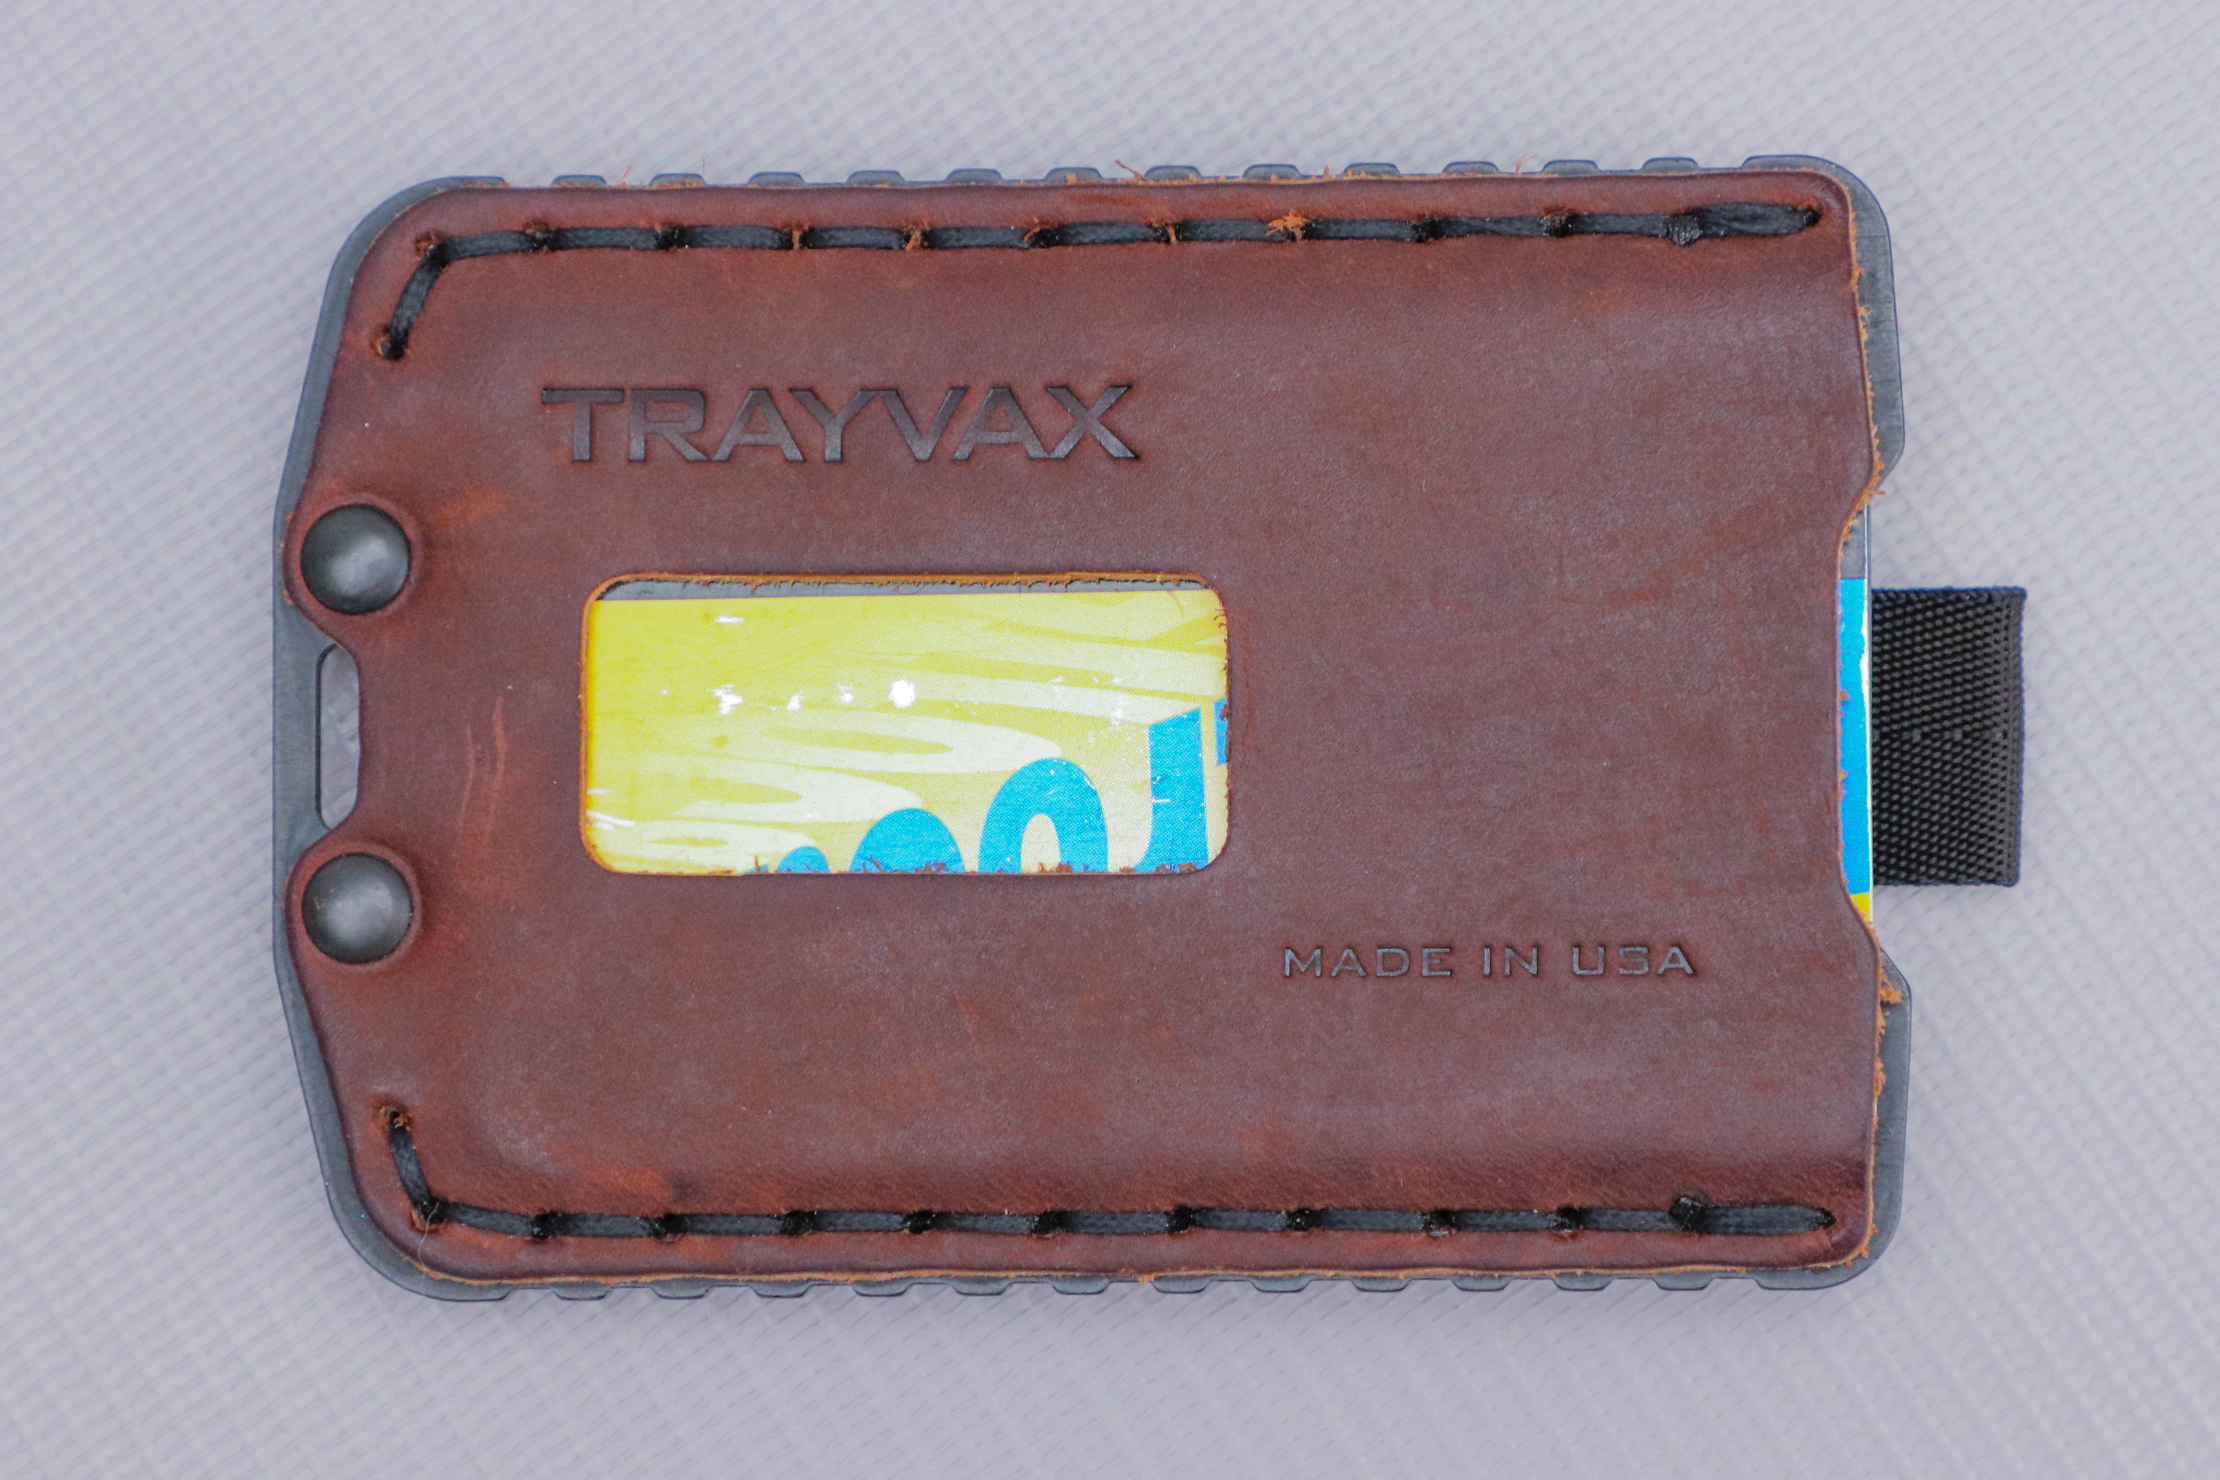 Trayvax Ascent Wallet Studio Closeup